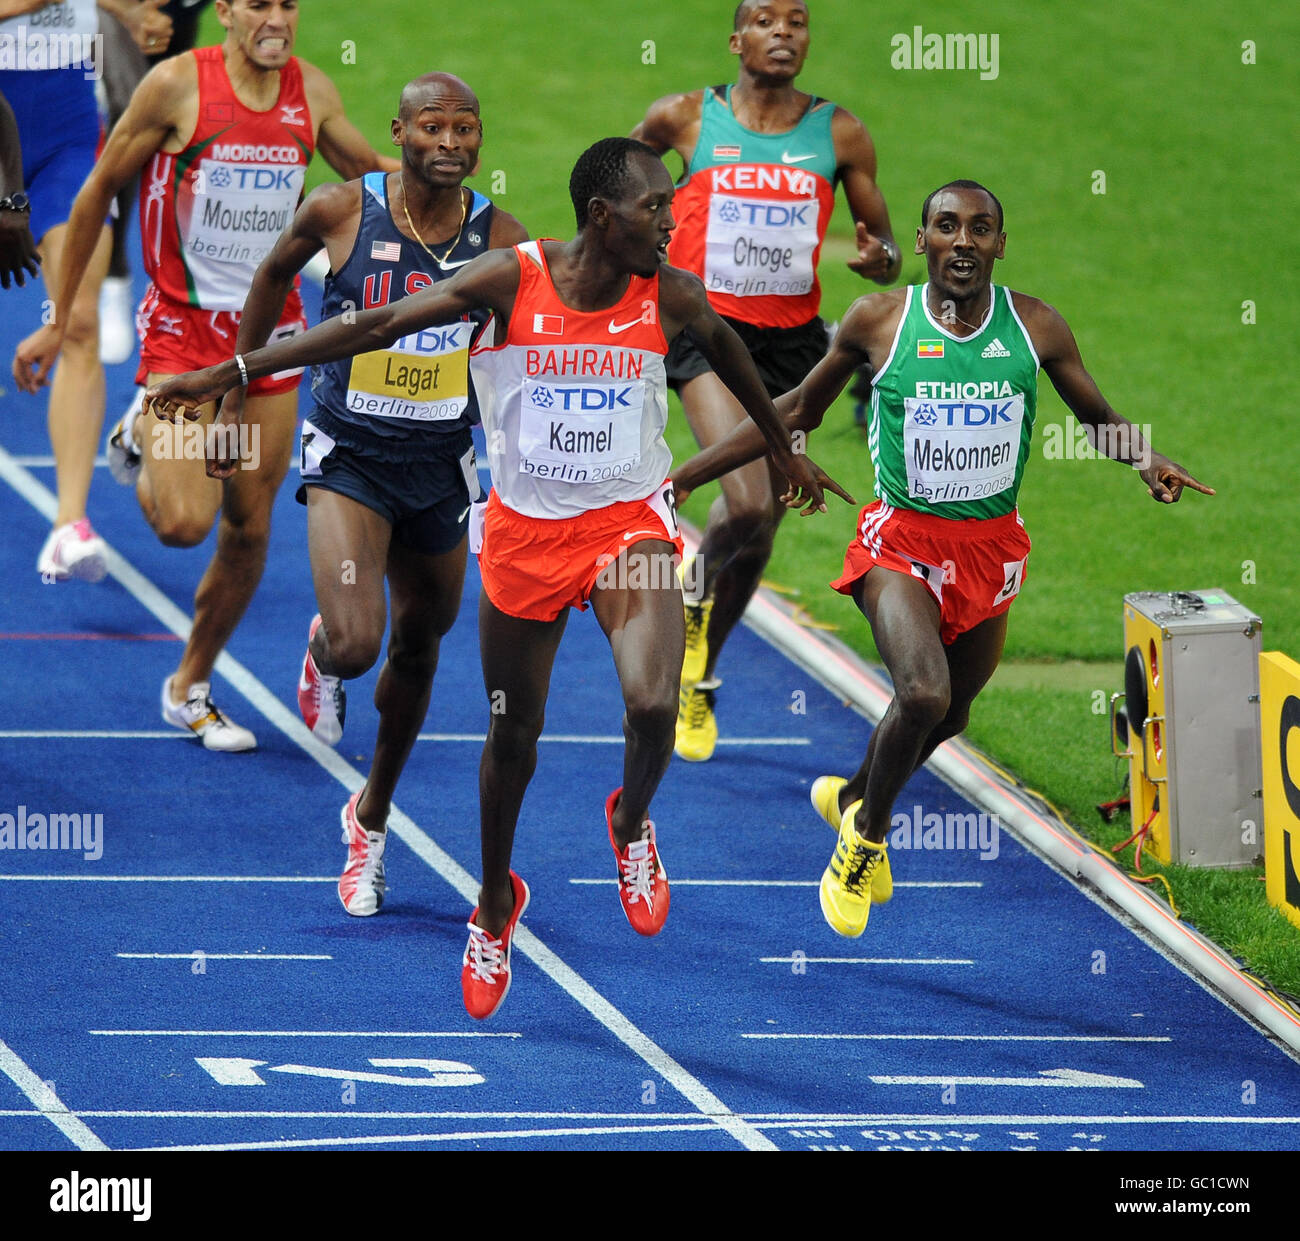 Atletica - Campionati mondiali di atletica IAAF - cinque giorni - Berlino 2009 - Olympiastadion. Il Bahrain Yusuf Saad Kamal vince la finale di 800m da Deresse Mekonnen dell'Etiopia Foto Stock